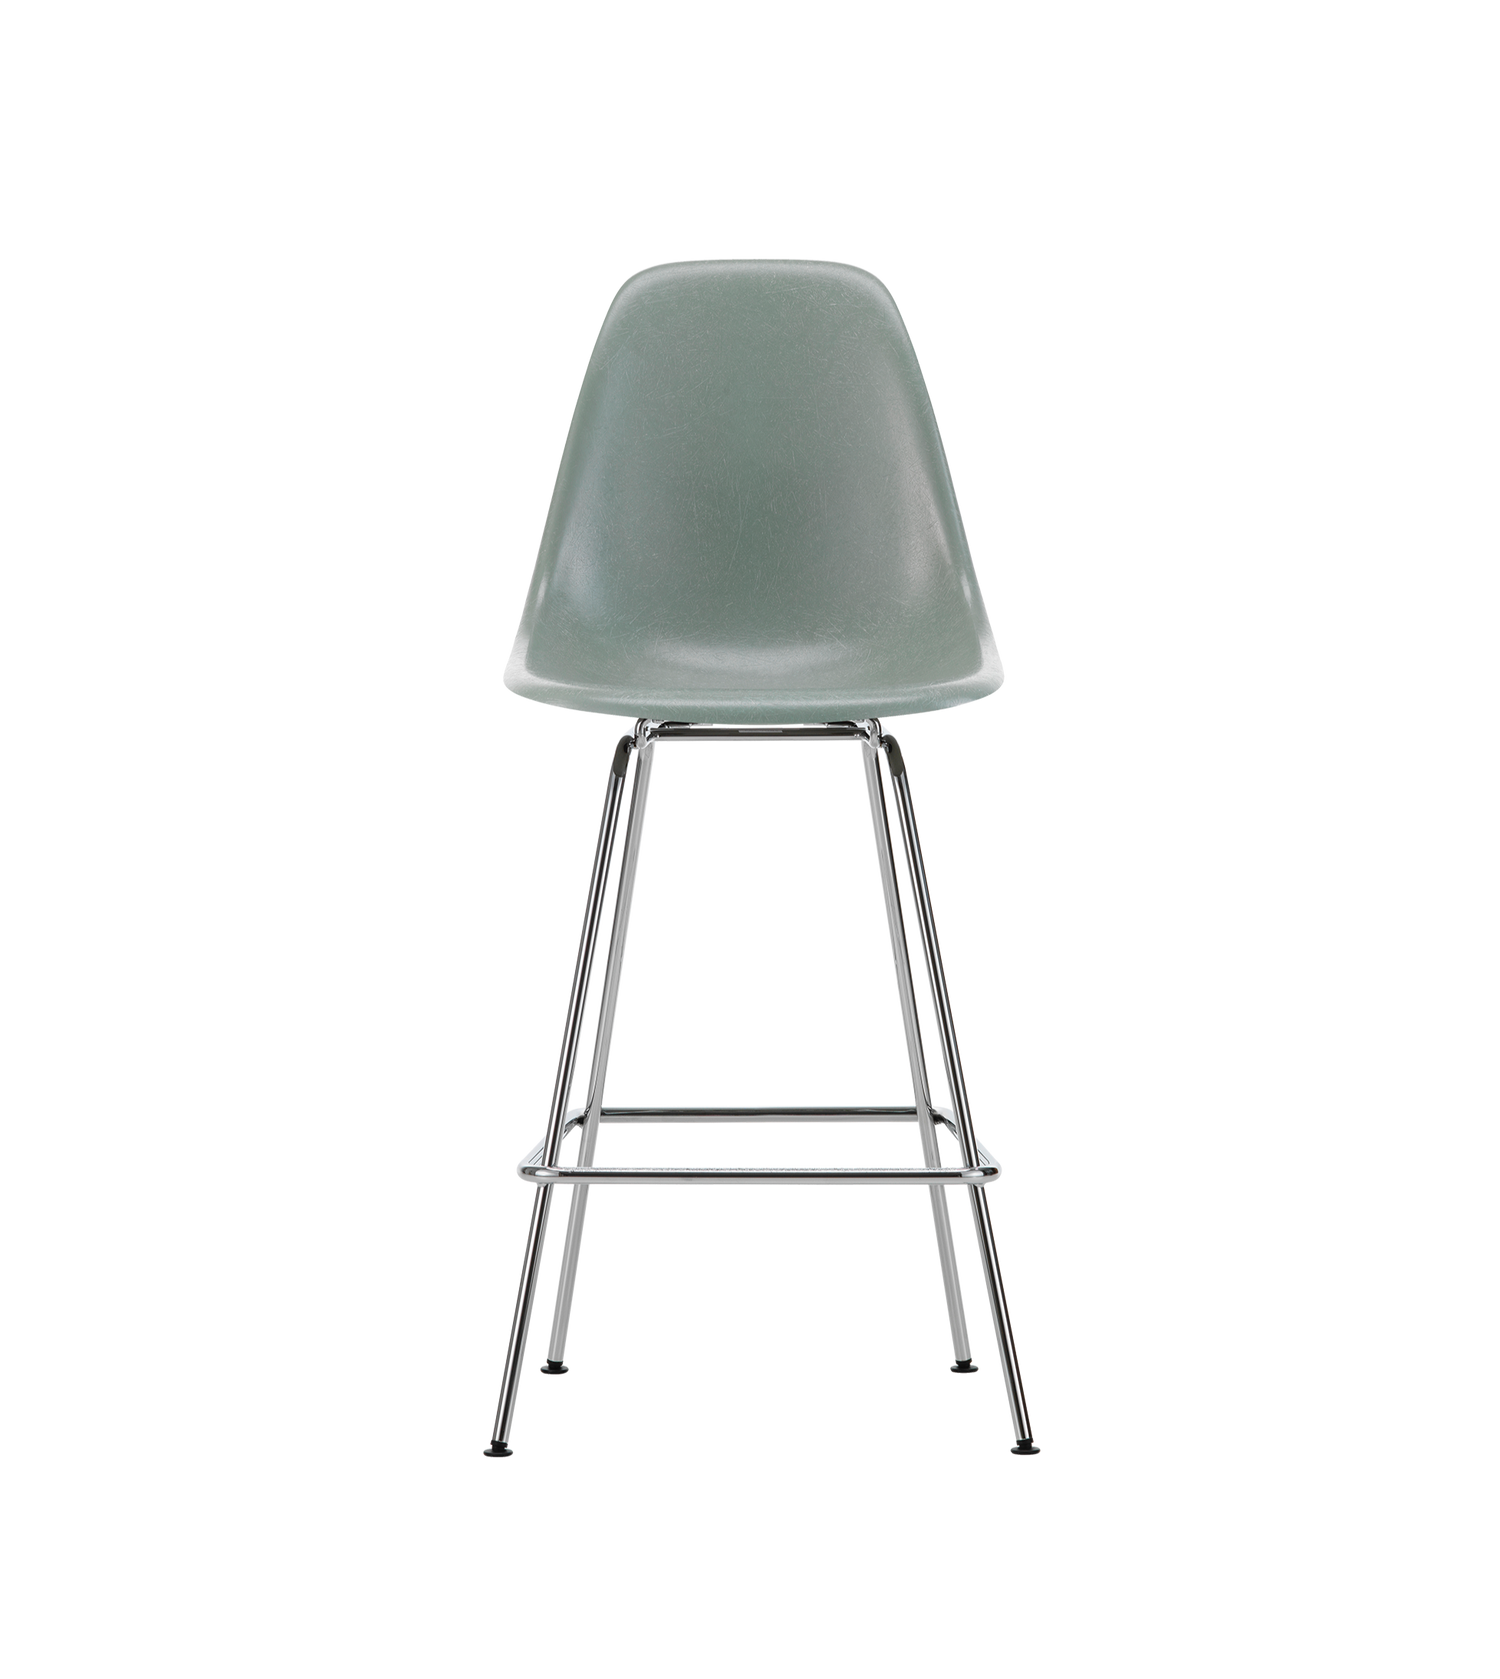 Vi blir aldri lei av de vakre og funksjonelle spisestolene Eames Fiberglass Side Chair DSX som ble designet av Charles og Ray Eames i 1948. Og nå finnes det også en superfin barstol-variant av denne! Barstolen Eames Fiberglass Stool Medium er laget i gjennomfarget glassfiber og er designet og formet etter menneskekroppen, noe som gjør den til en utrolig behagelig barstol å sitte i.